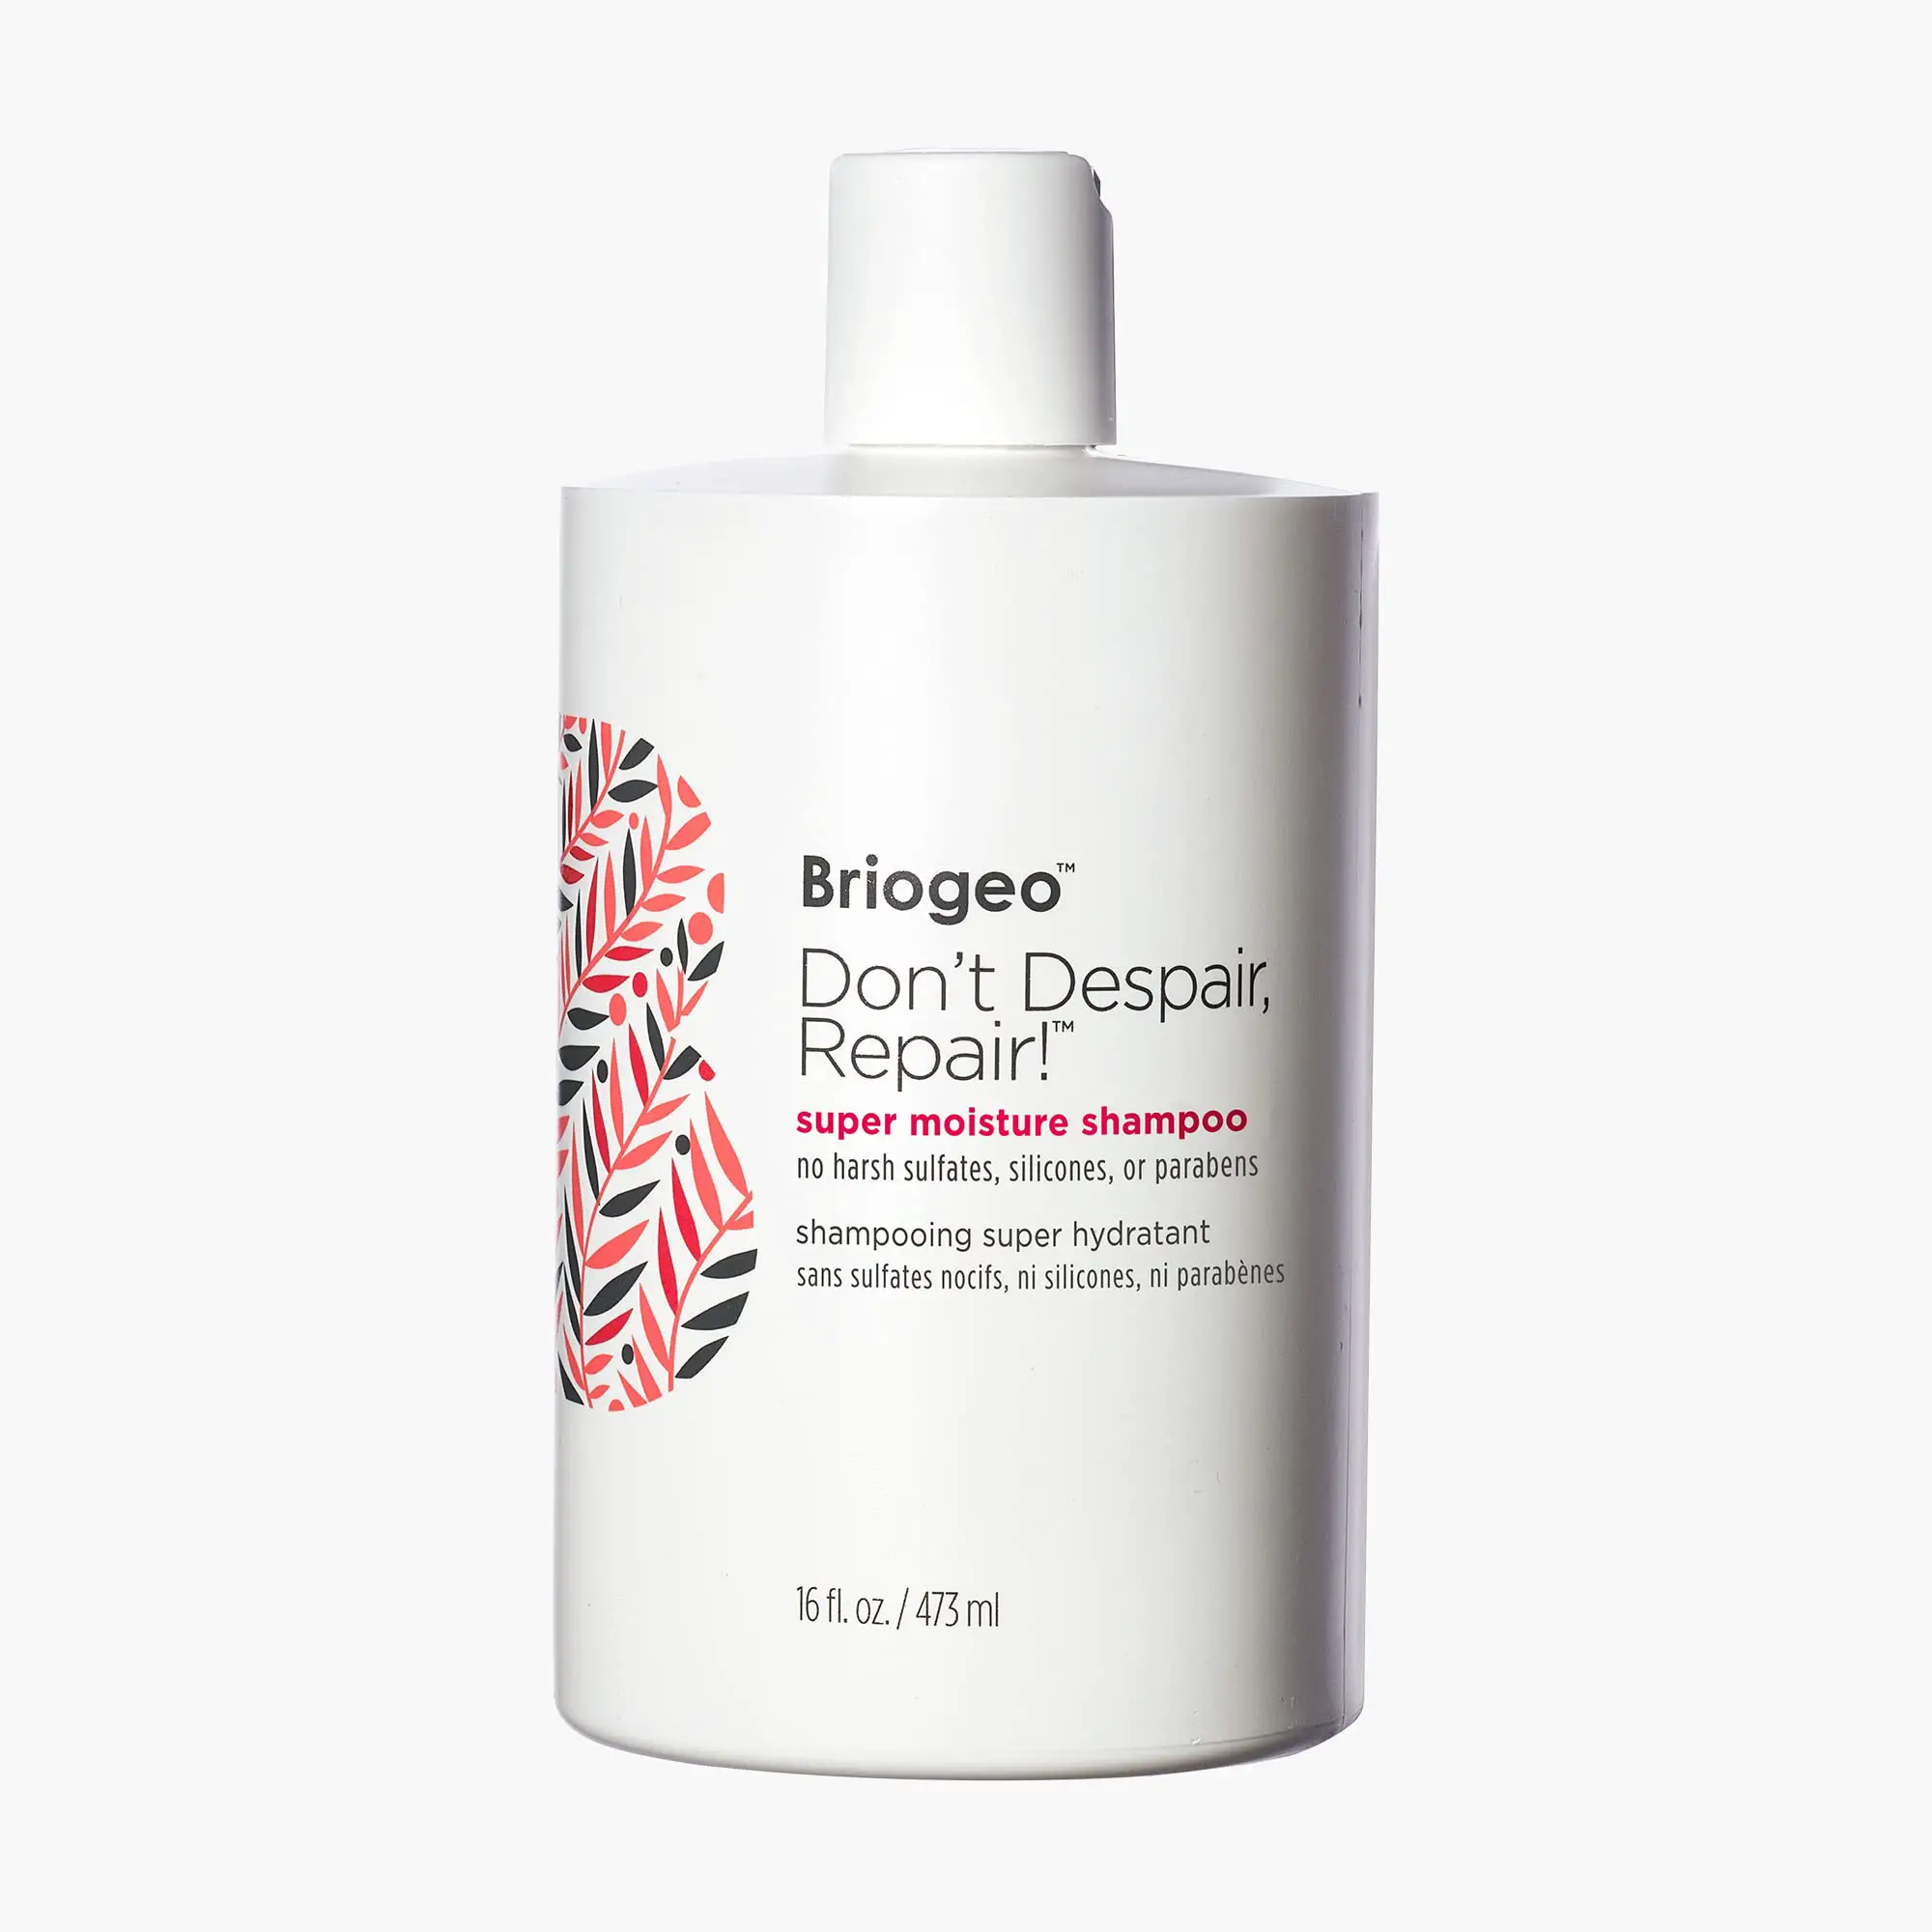 Briogeo Don’t Despair Repair Super Moisture Shampoo